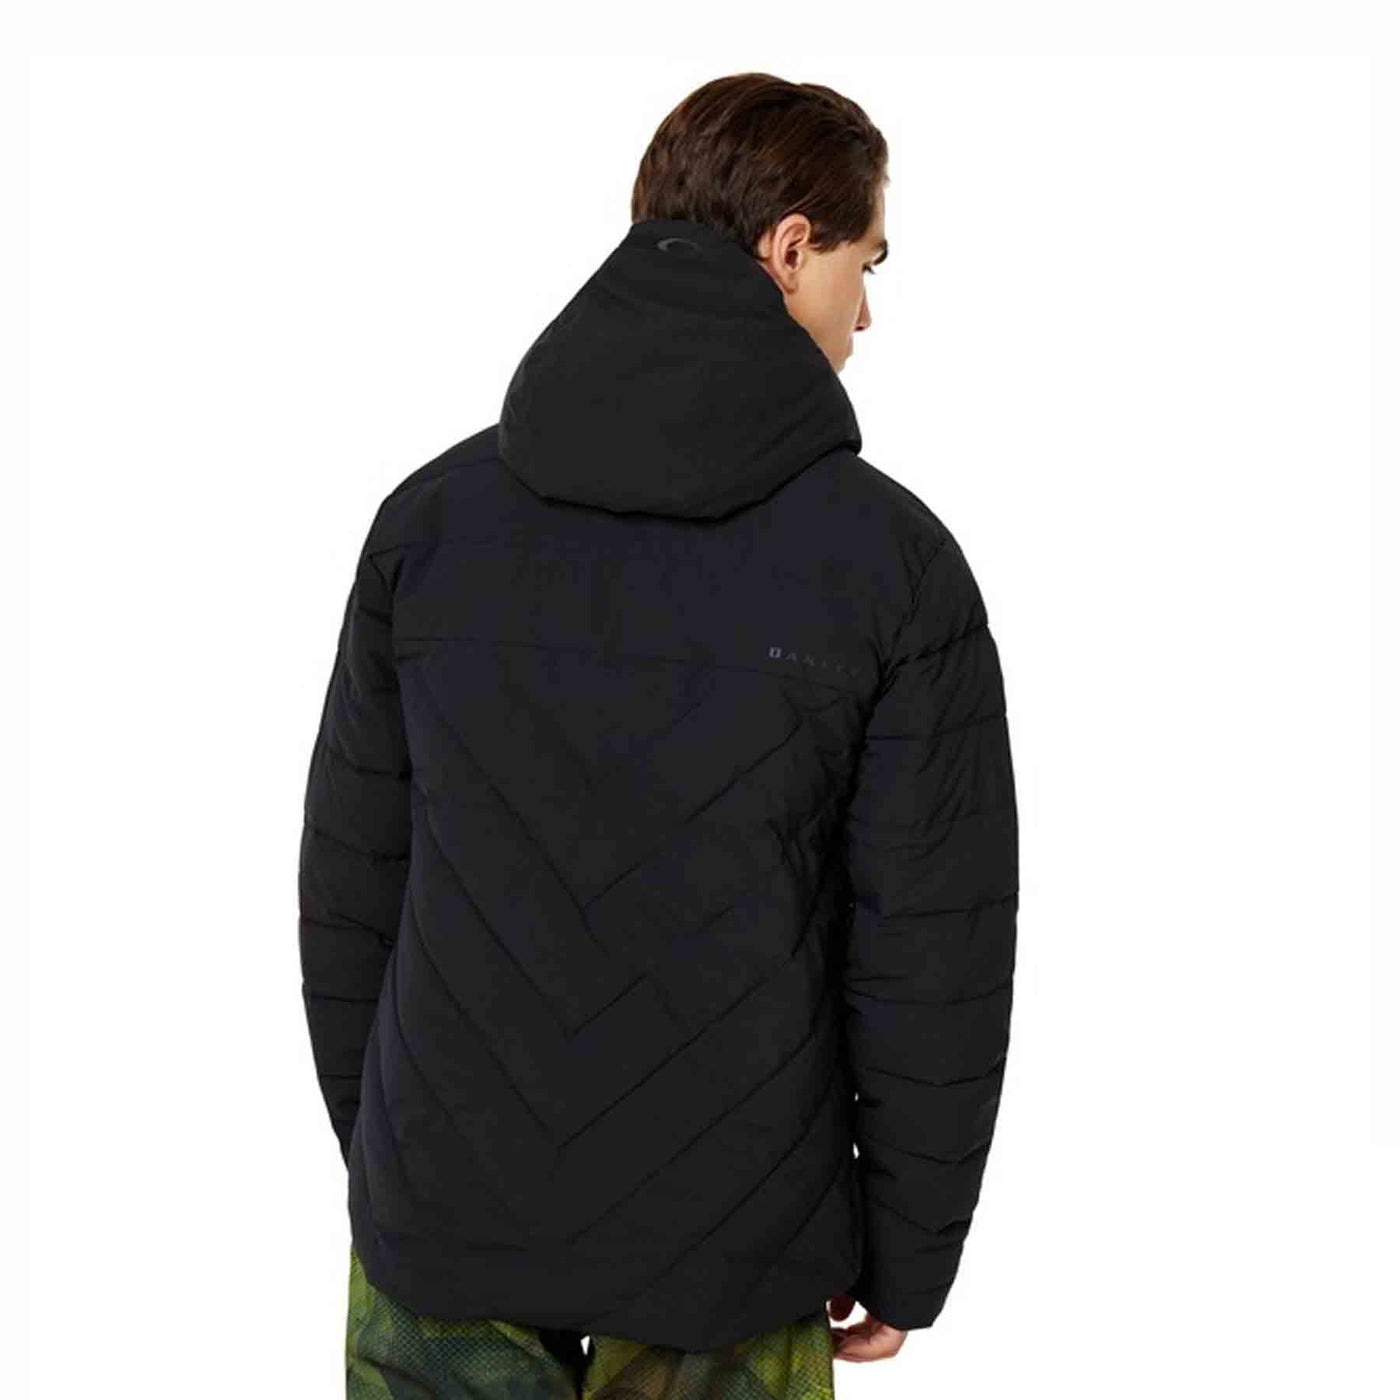 Oakley Great Scott 2.0 Insulated Men's Snow Jacket (Blackout) OAKLEY